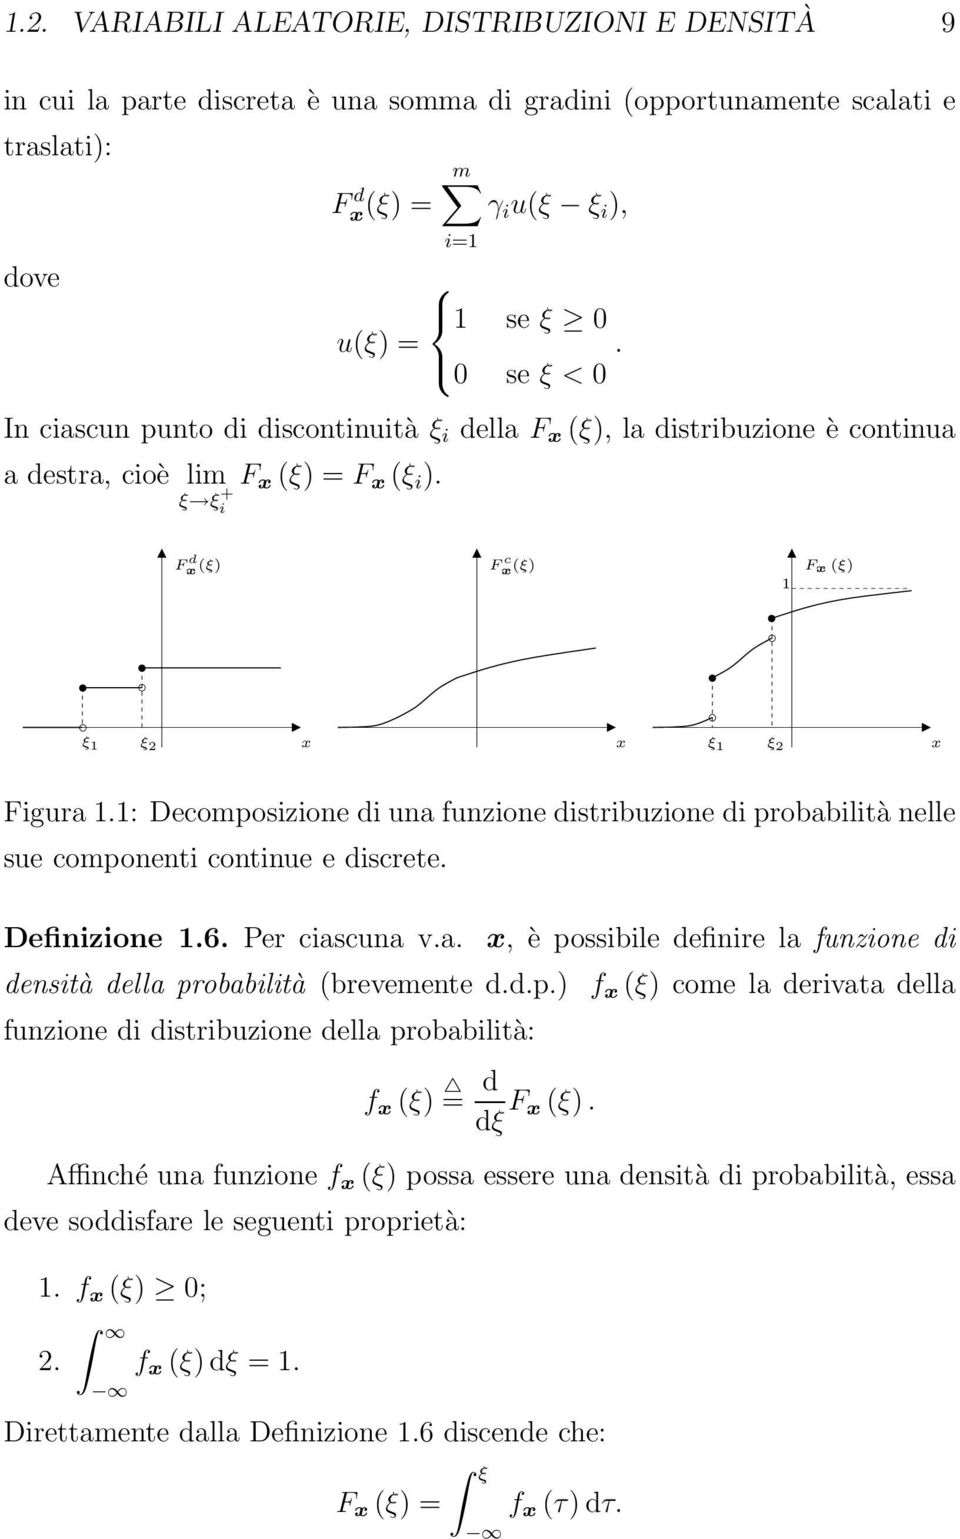 F d x (ξ) F c x (ξ) 1 F x (ξ) ξ 1 ξ 2 x x ξ 1 ξ 2 x Figura 1.1: Decomposizione di una funzione distribuzione di probabilità nelle sue componenti continue e discrete. Definizione 1.6. Per ciascuna v.a. x, è possibile definire la funzione di densità della probabilità (brevemente d.